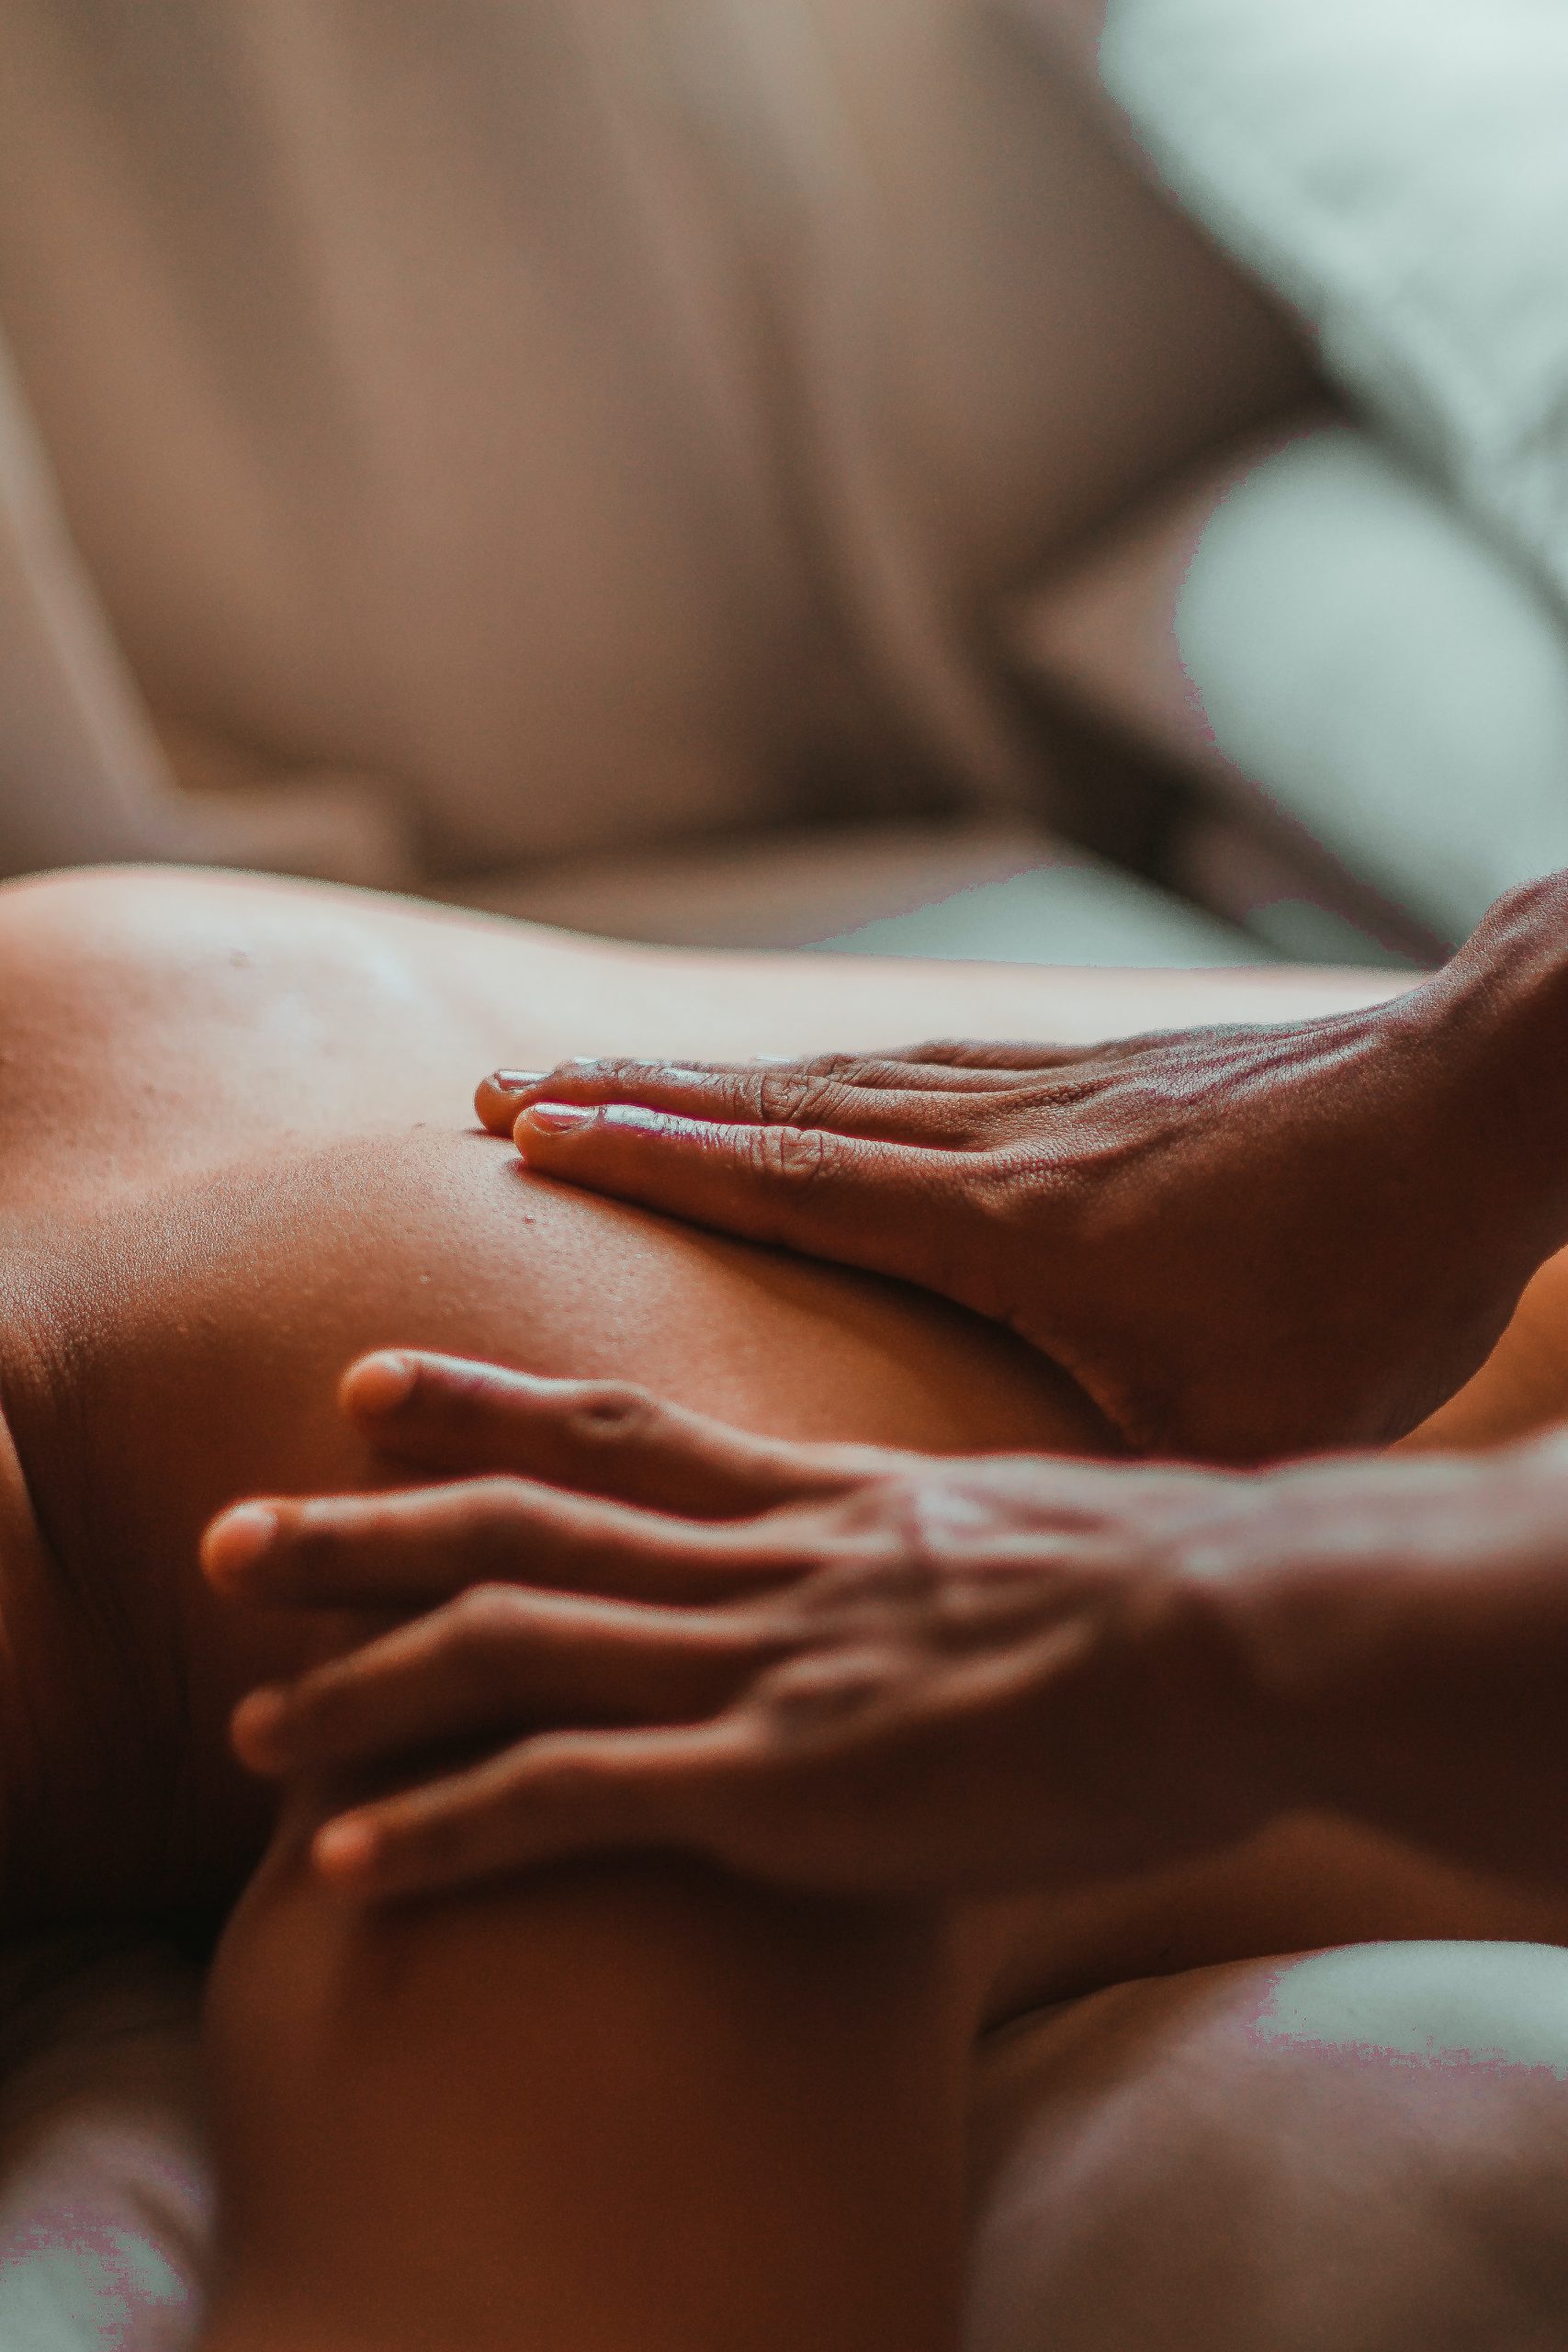 personne qui masse le dos d'une femme
massage ayurvédique pour les femmes